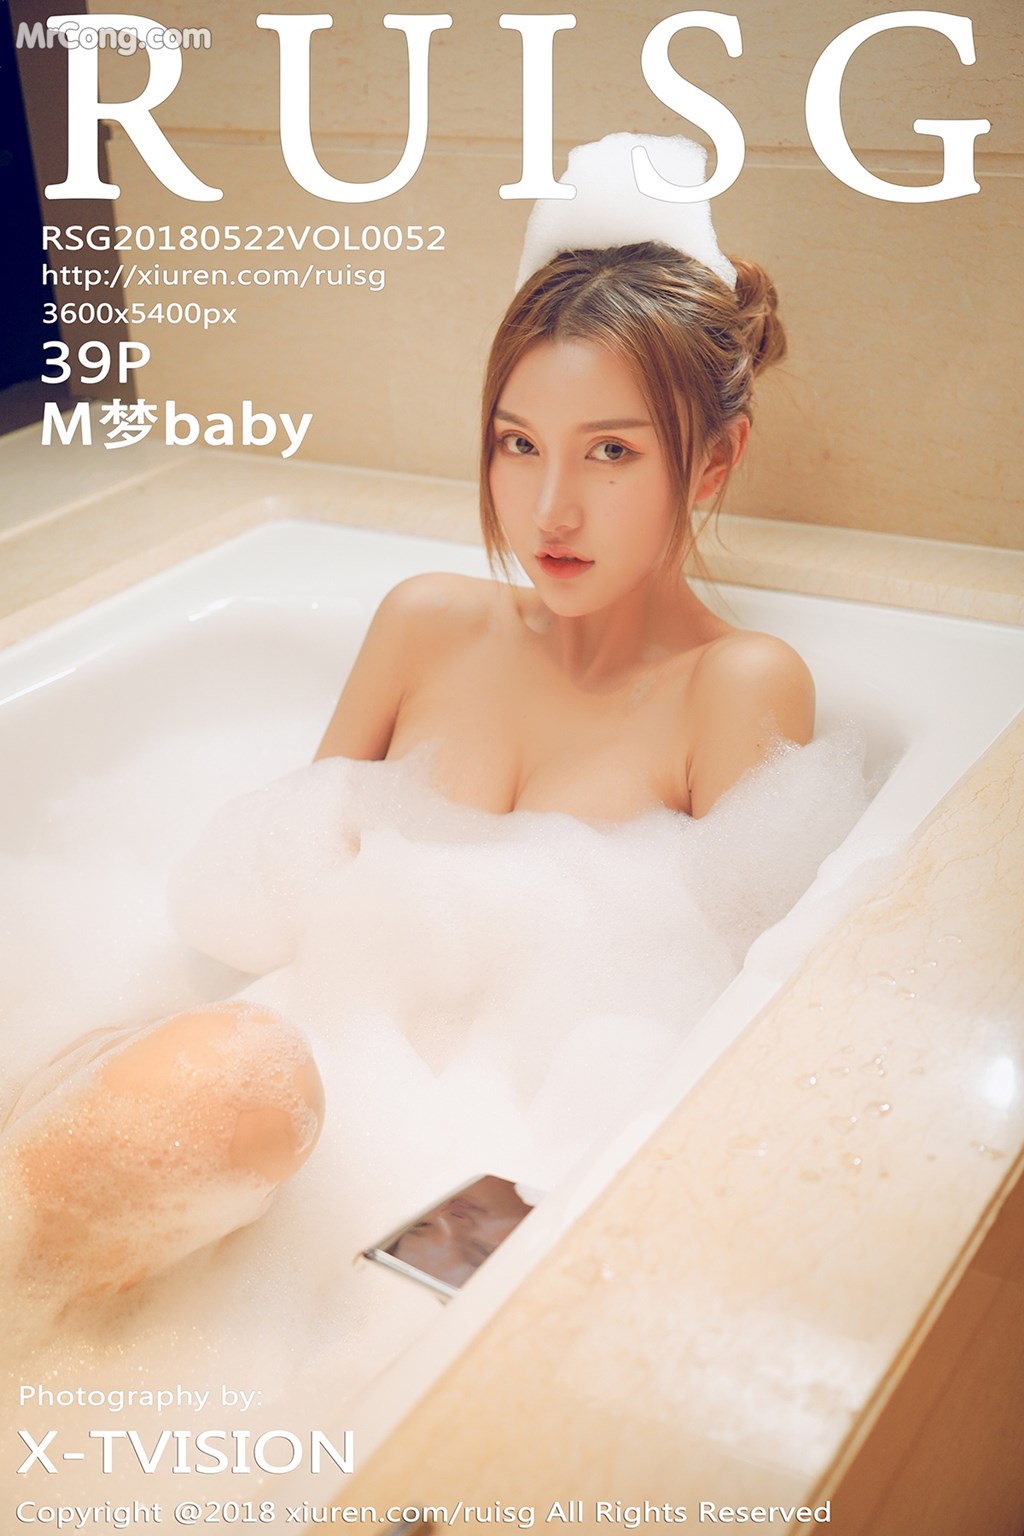 RuiSG Vol.052: Model M 梦 baby (40 photos)